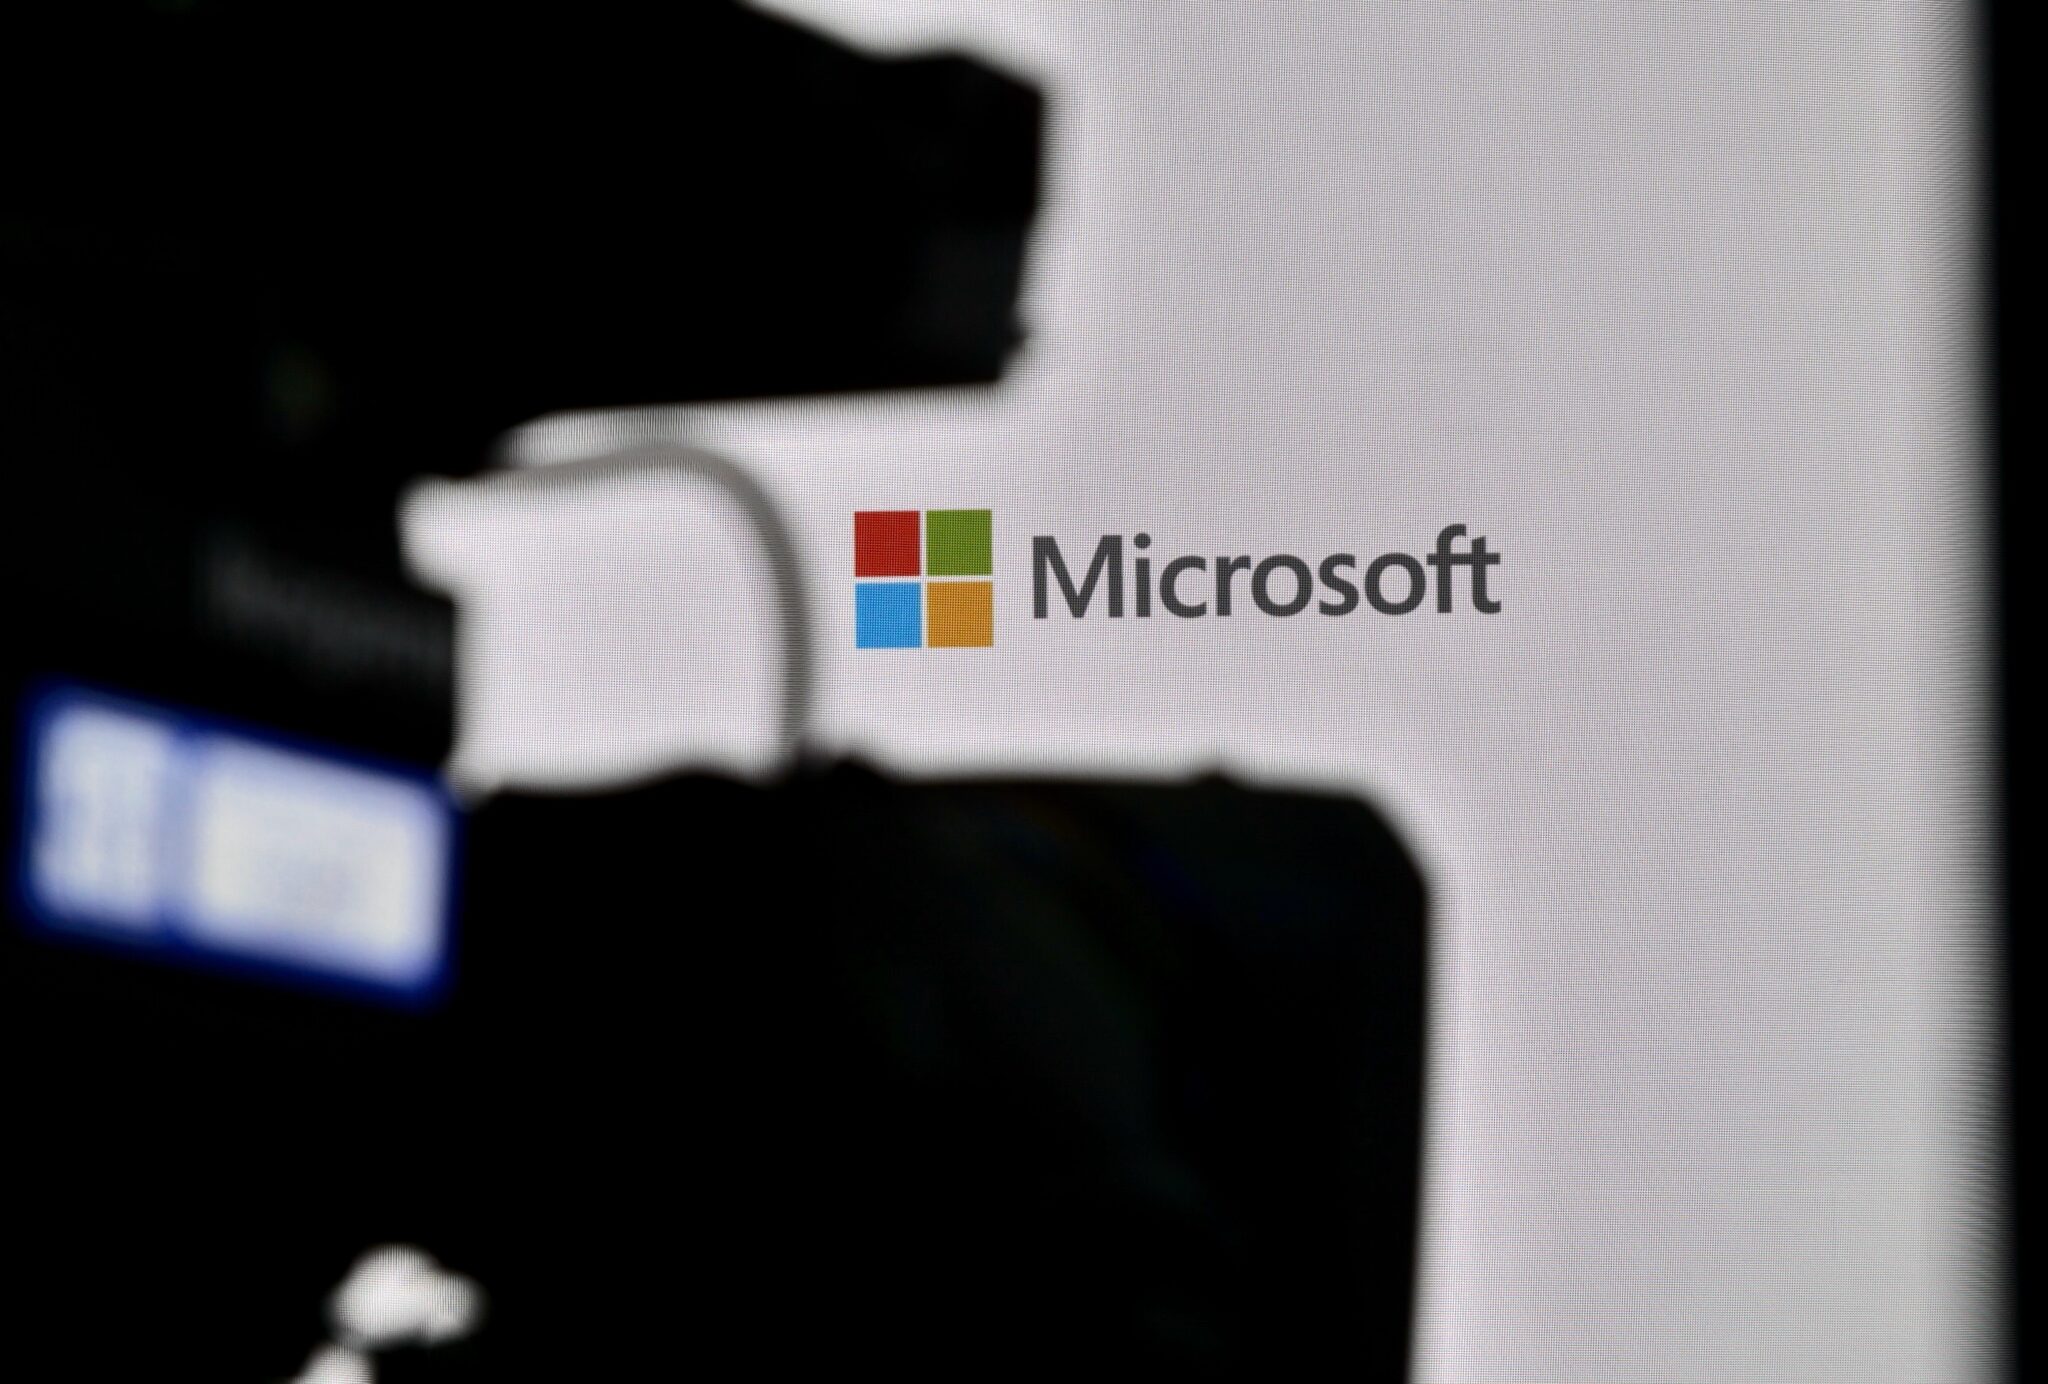 Microsoft probeerde de kwetsbaarheid in DALL-E te verbergen, aldus een medewerker van het bedrijf